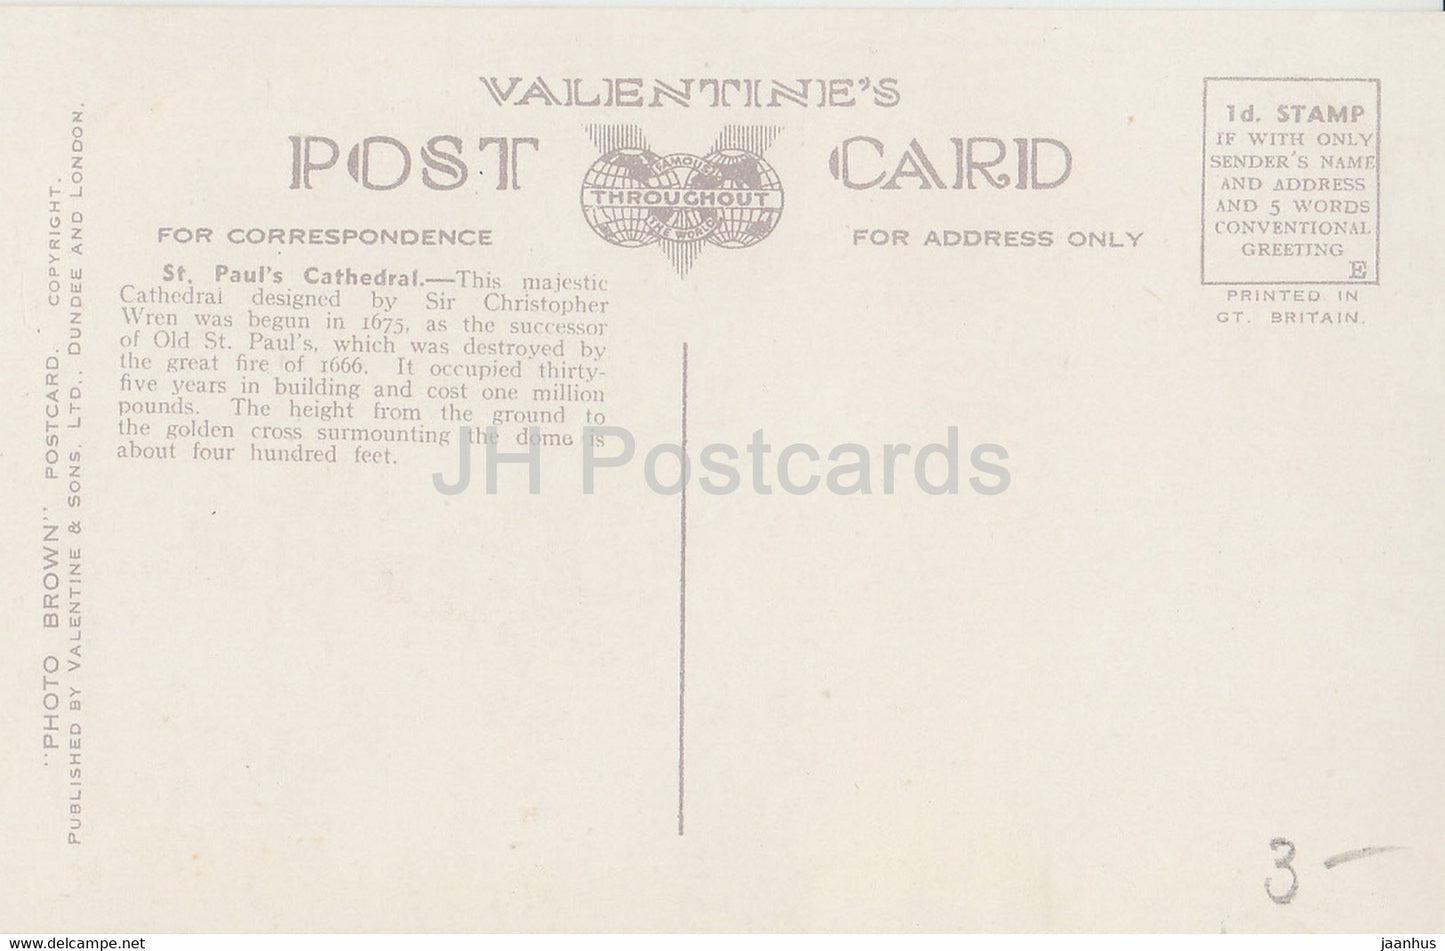 London - St. Paul's Cathedral - Valentine - Bus - 85595 - alte Postkarte - England - Vereinigtes Königreich - unbenutzt